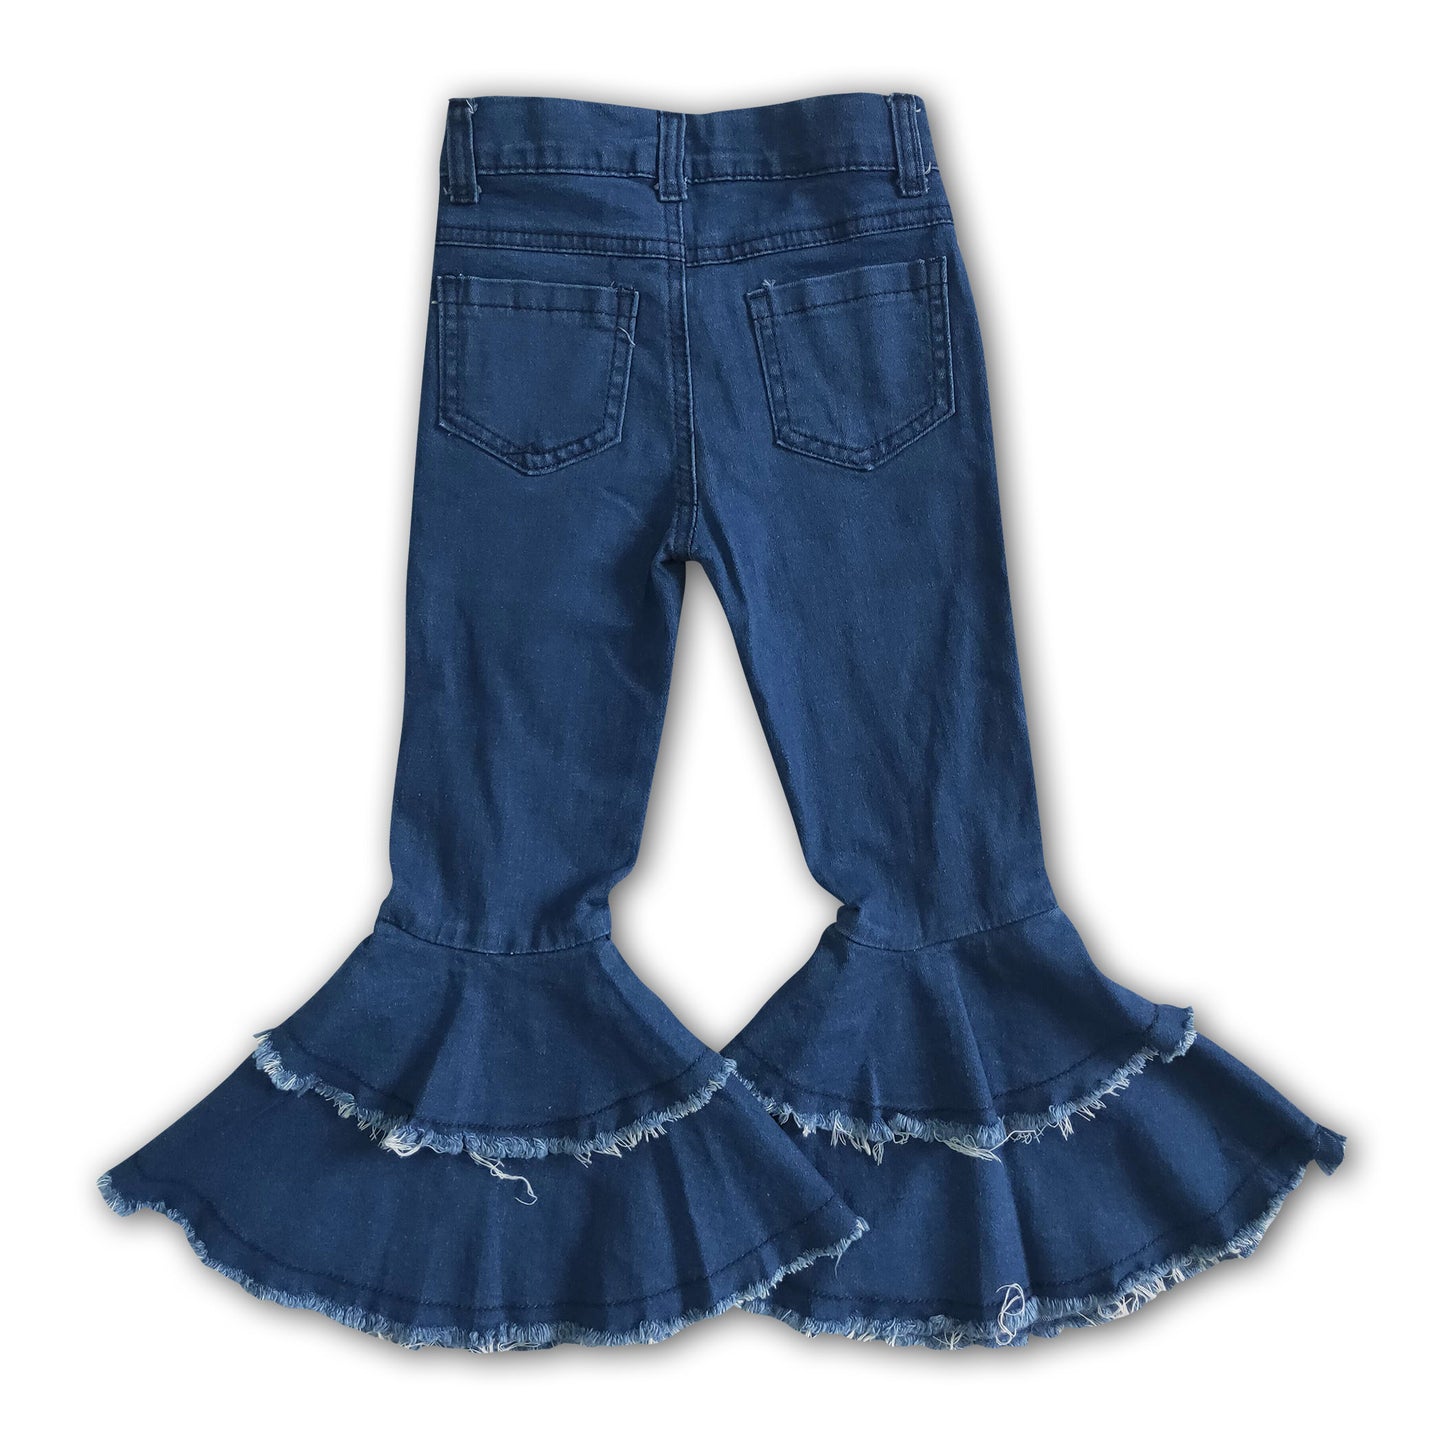 Blue denim washed kids girls jeans